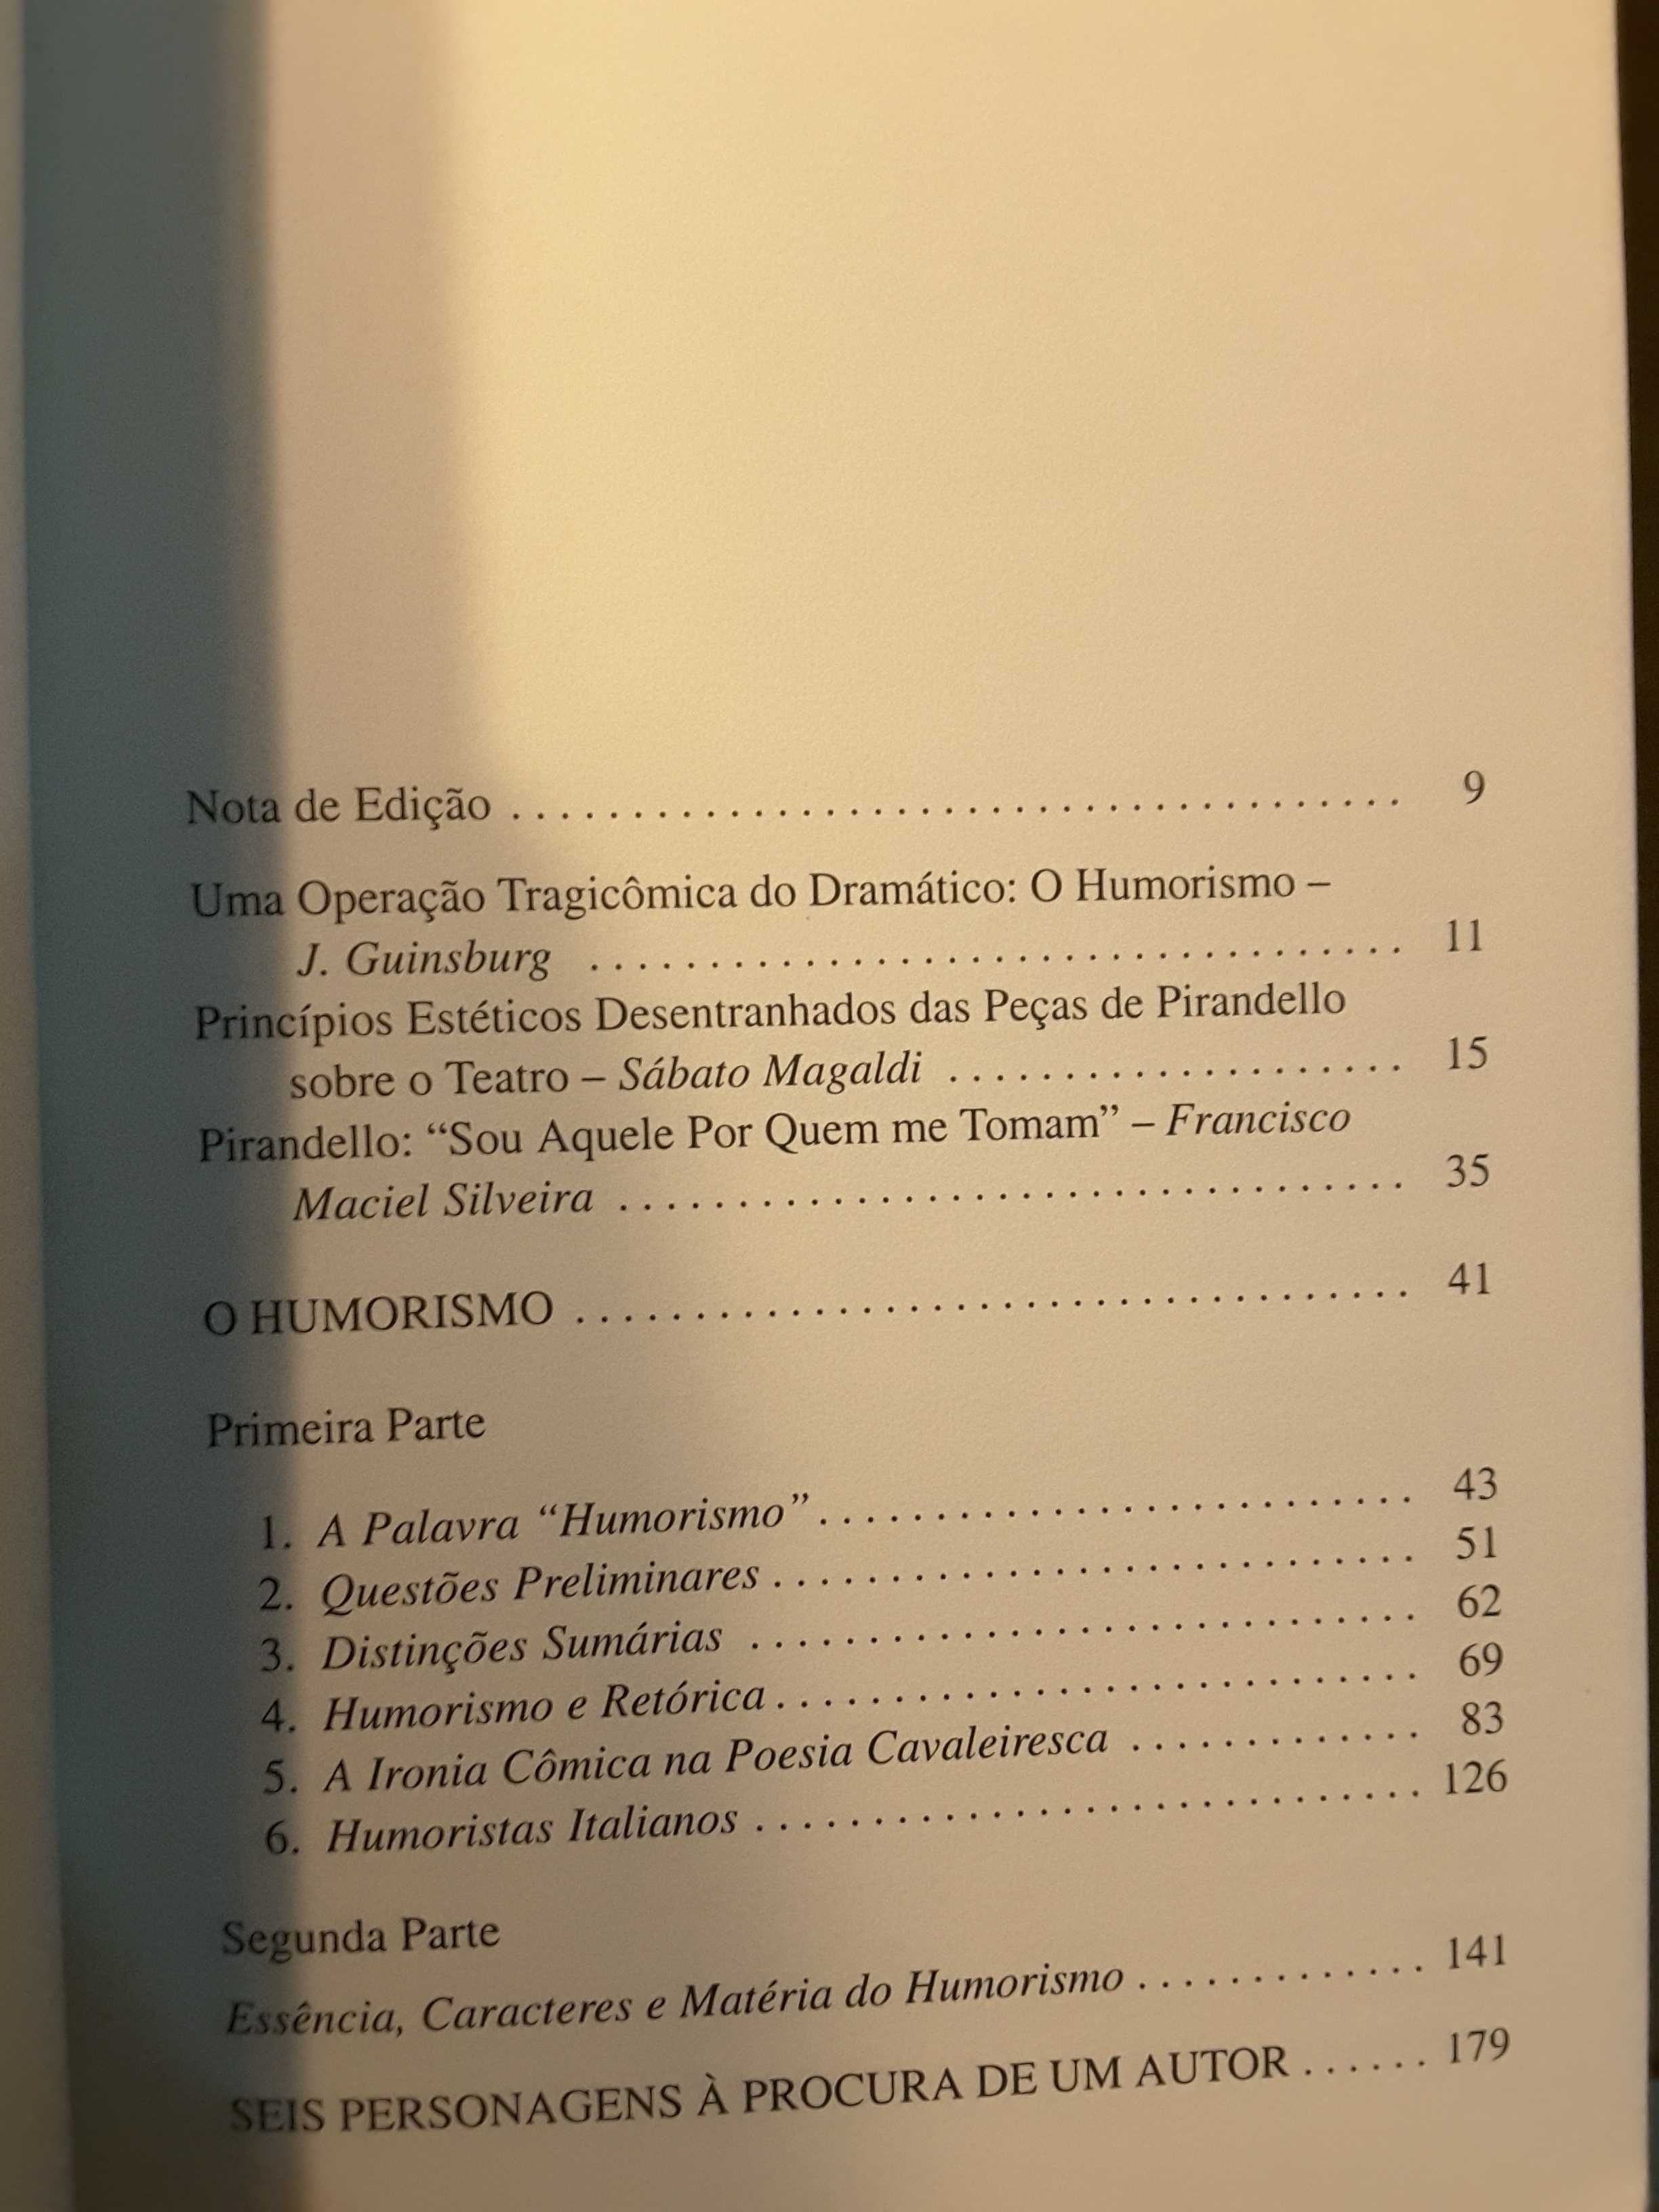 Pirandello / Oxford Histoy of English Literature